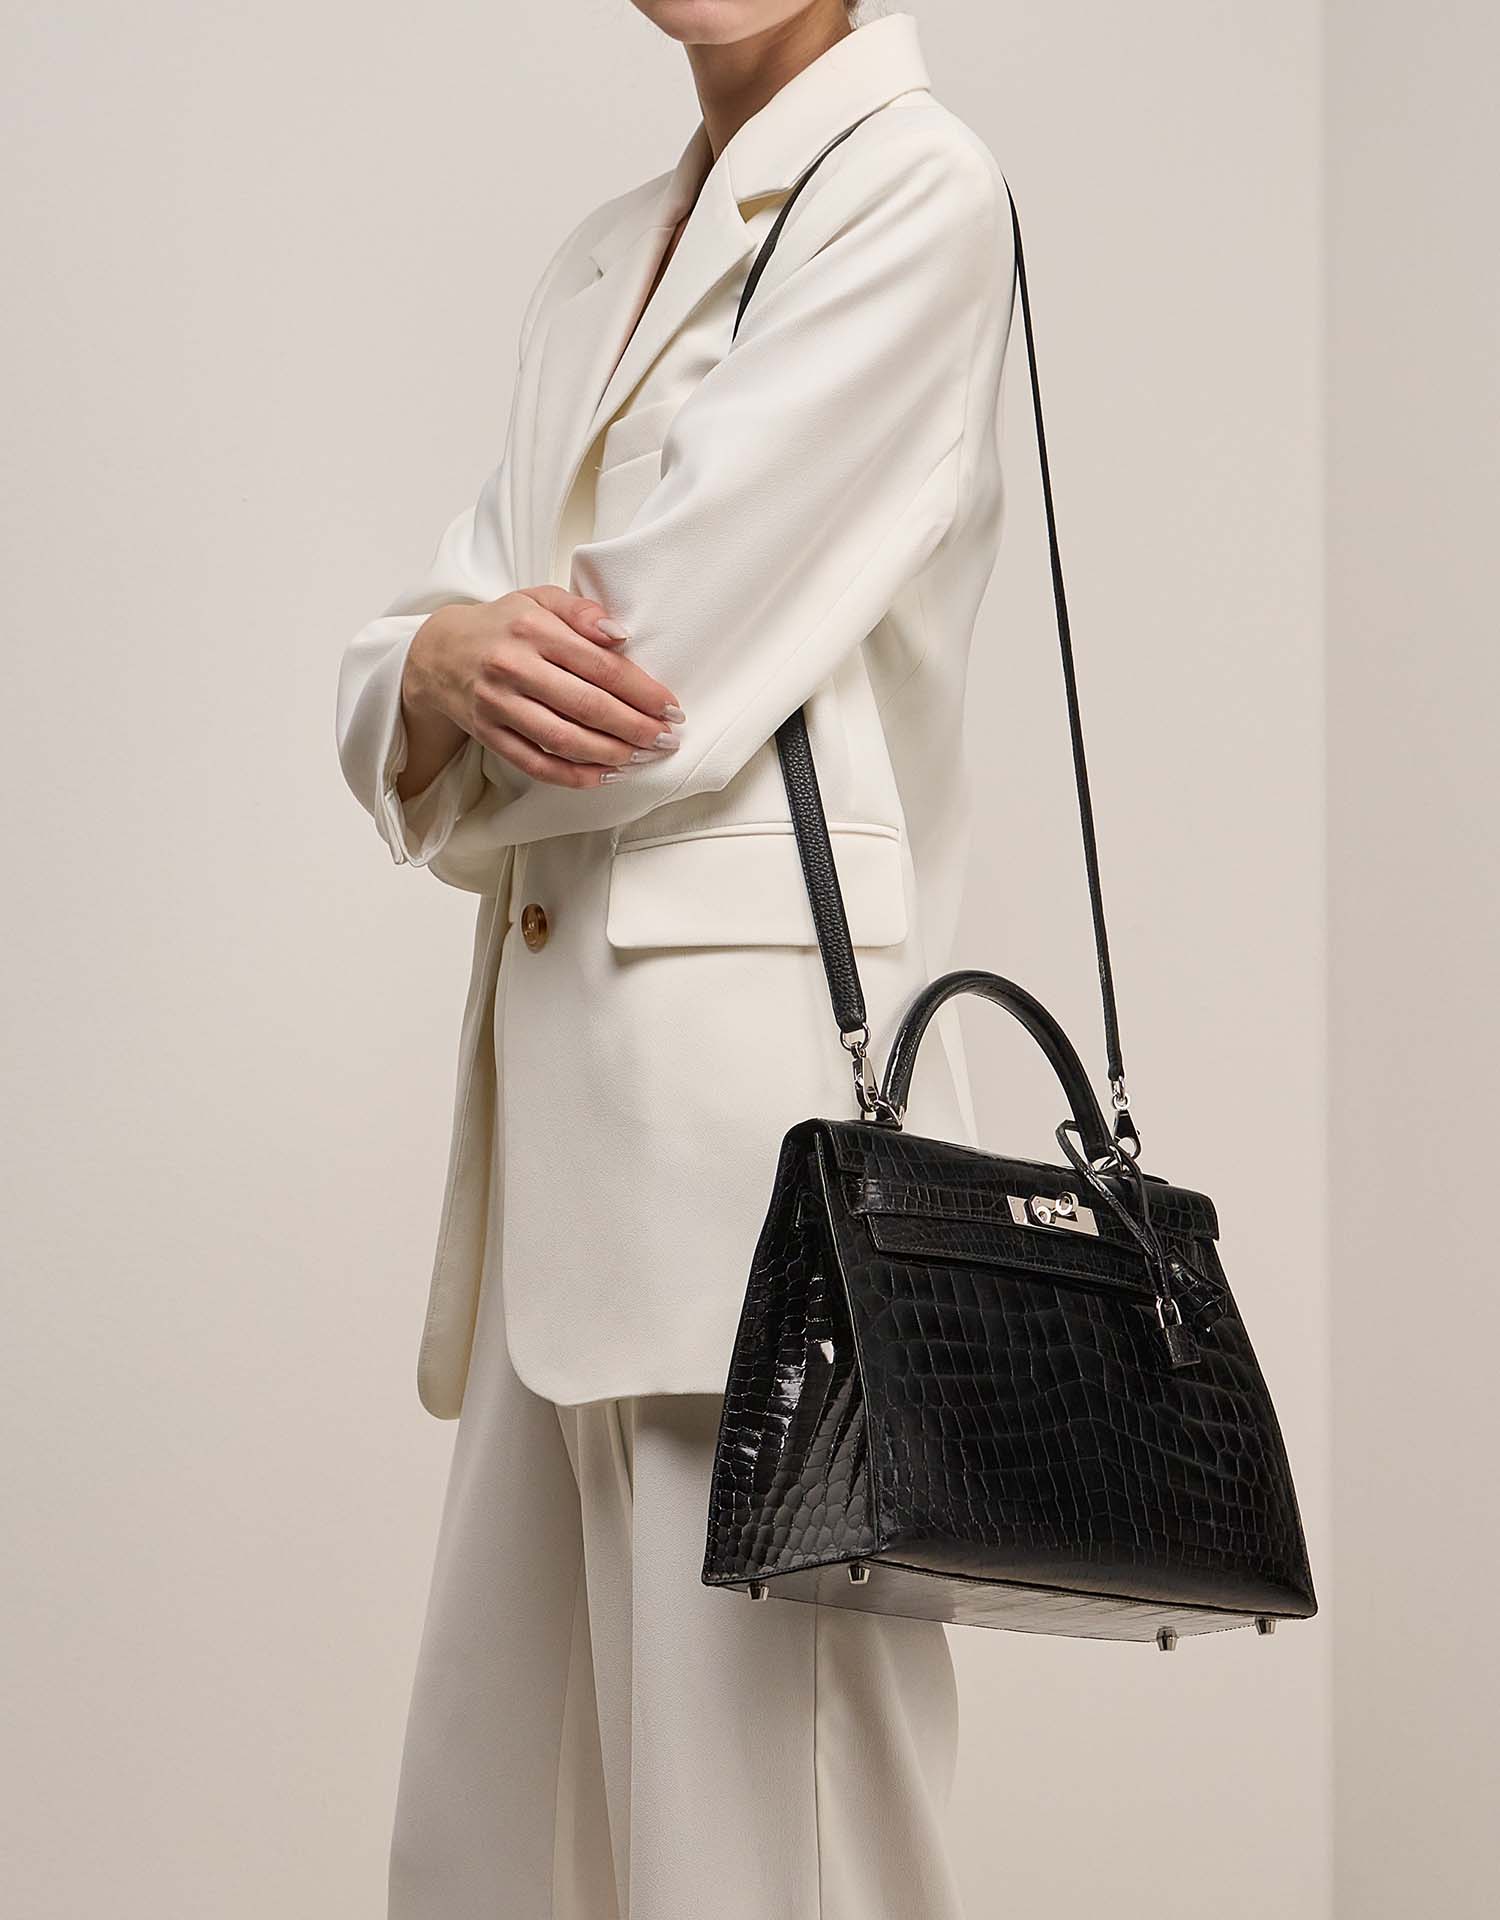 Hermès Strap Black on Model | Sell your designer bag on Saclab.com